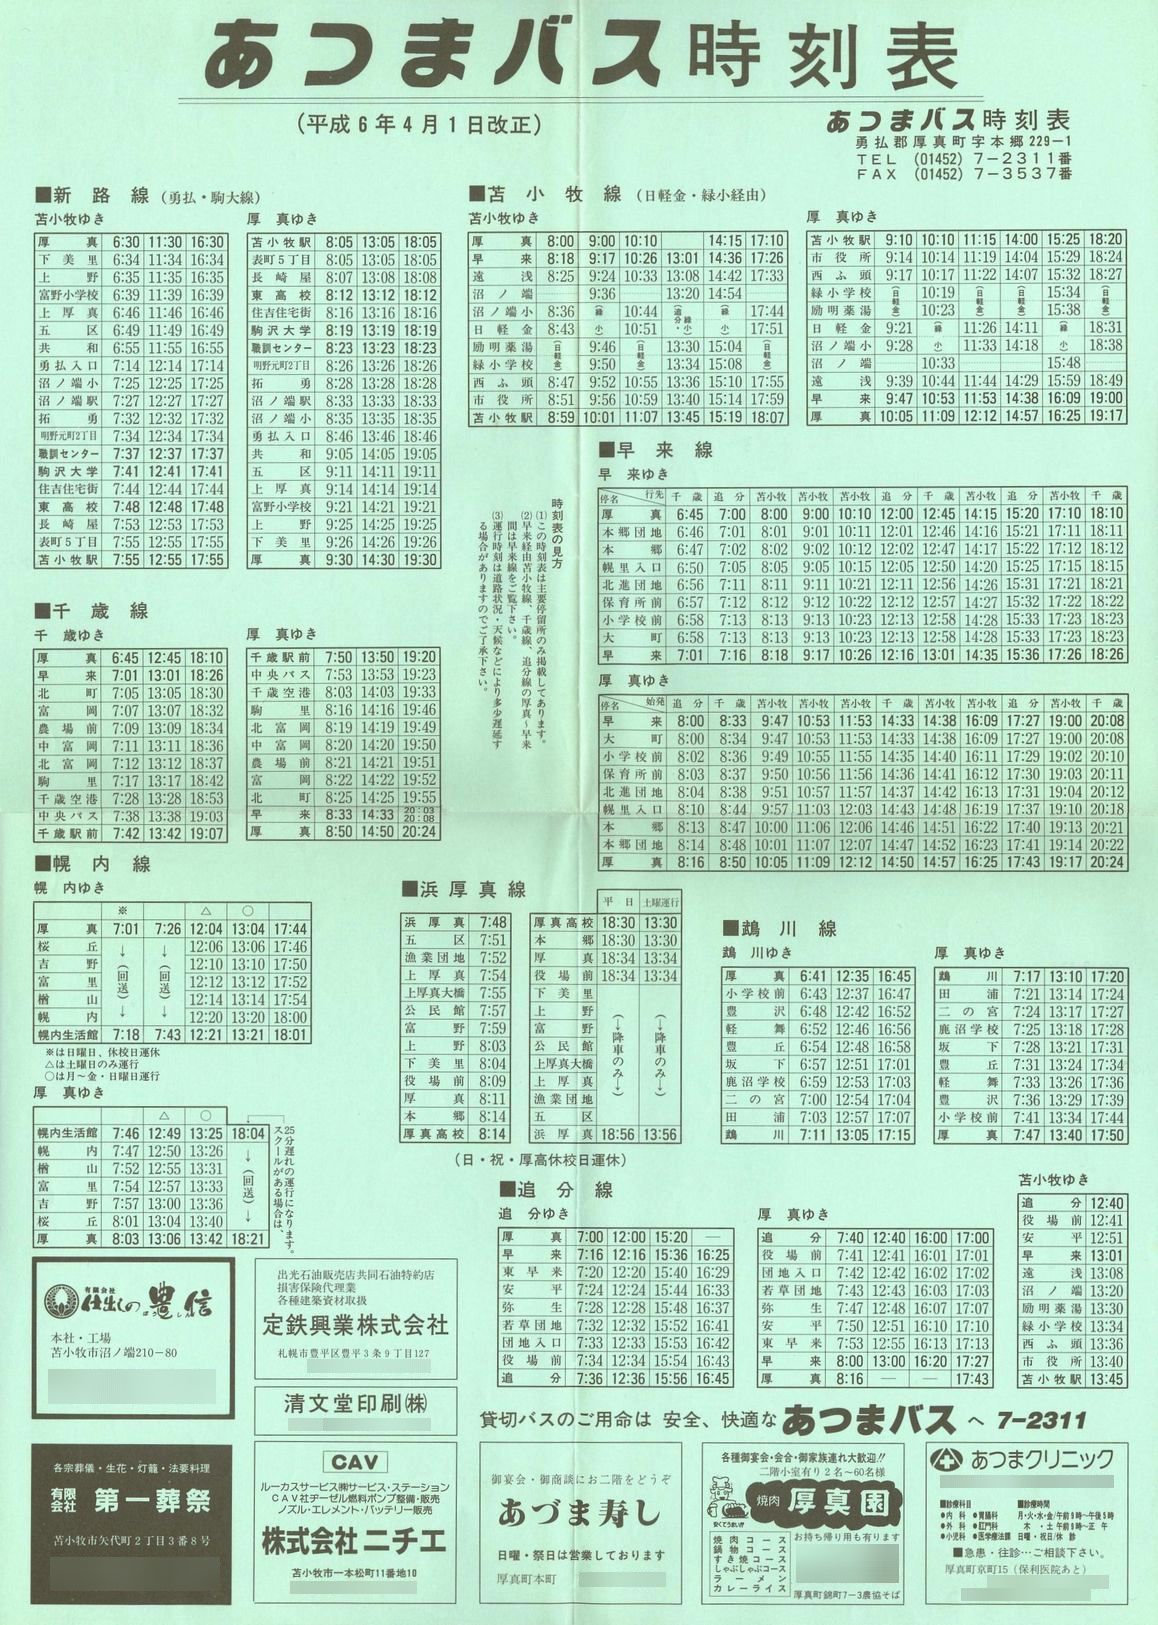 1994-04-01改正_あつまバス_時刻表